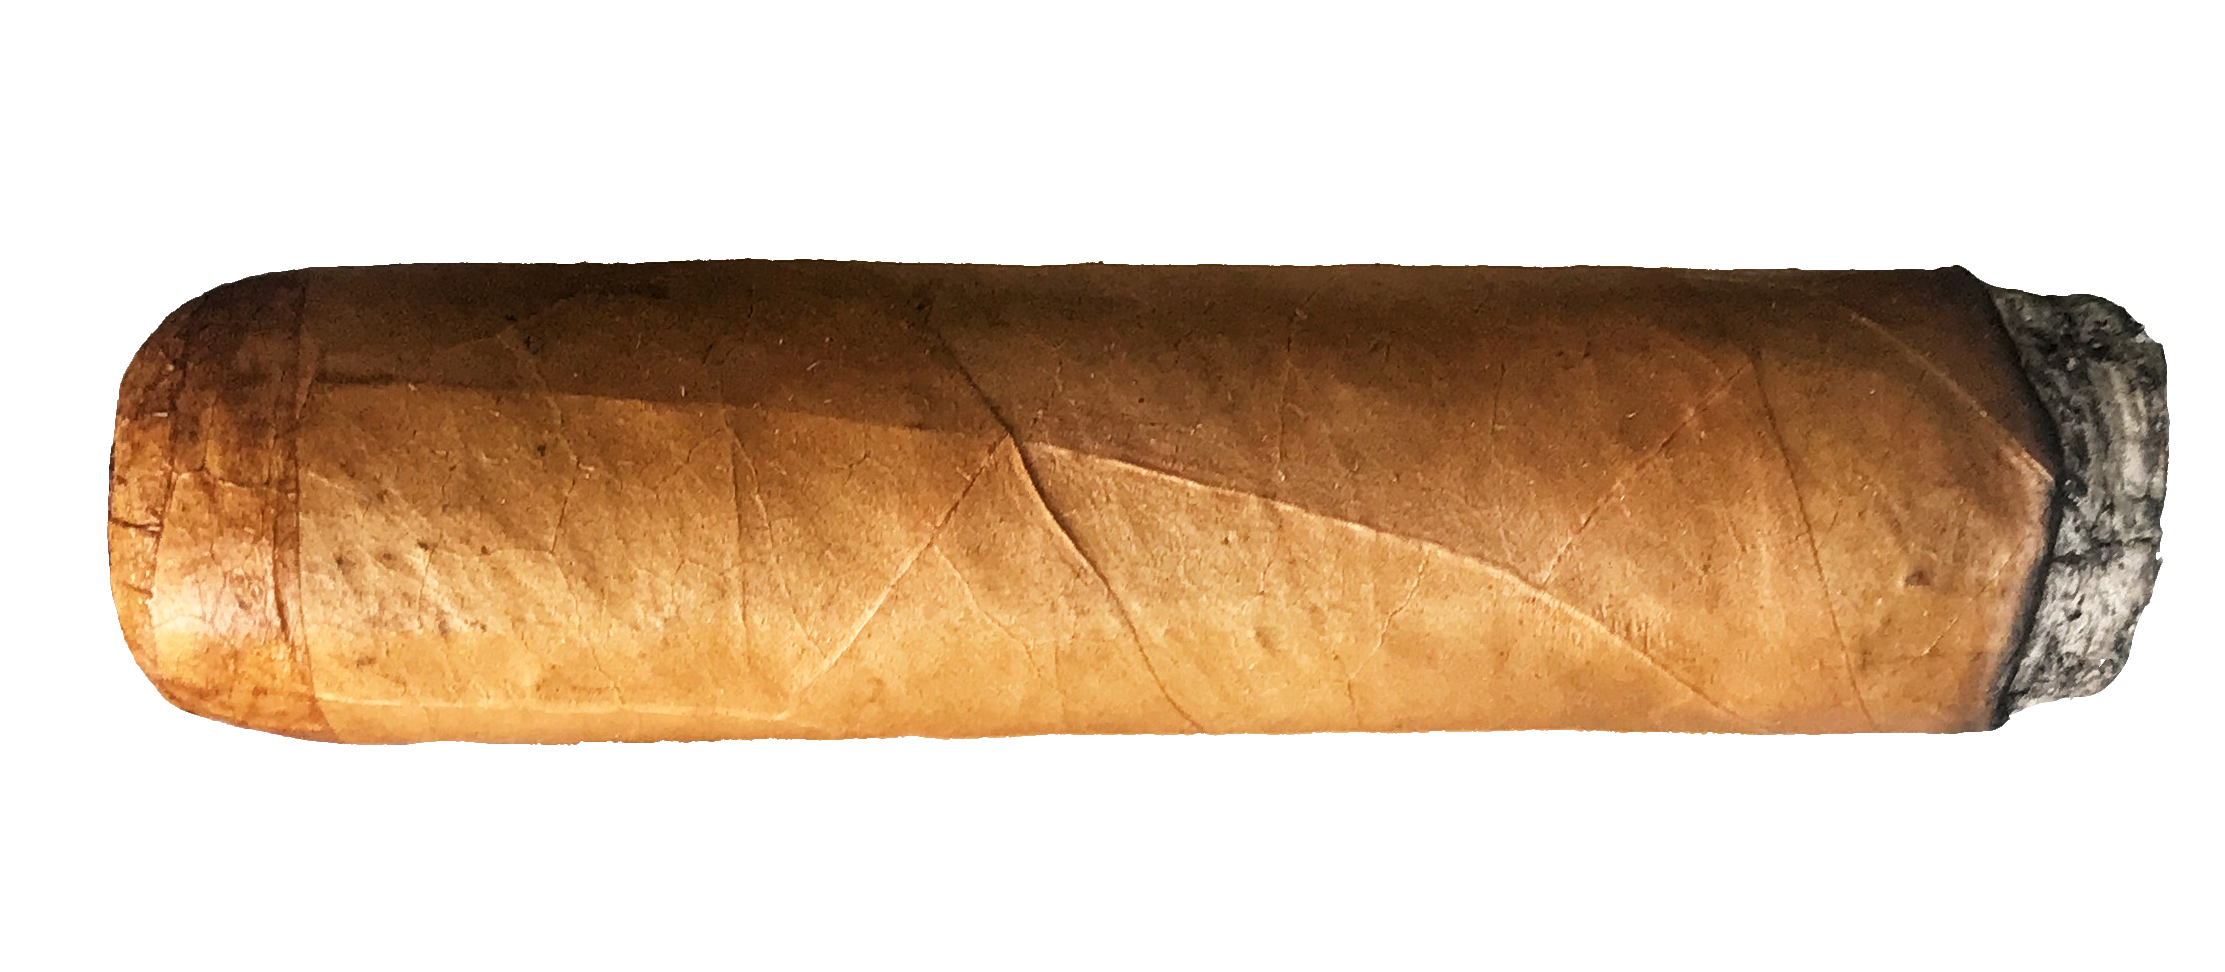 cigar-48